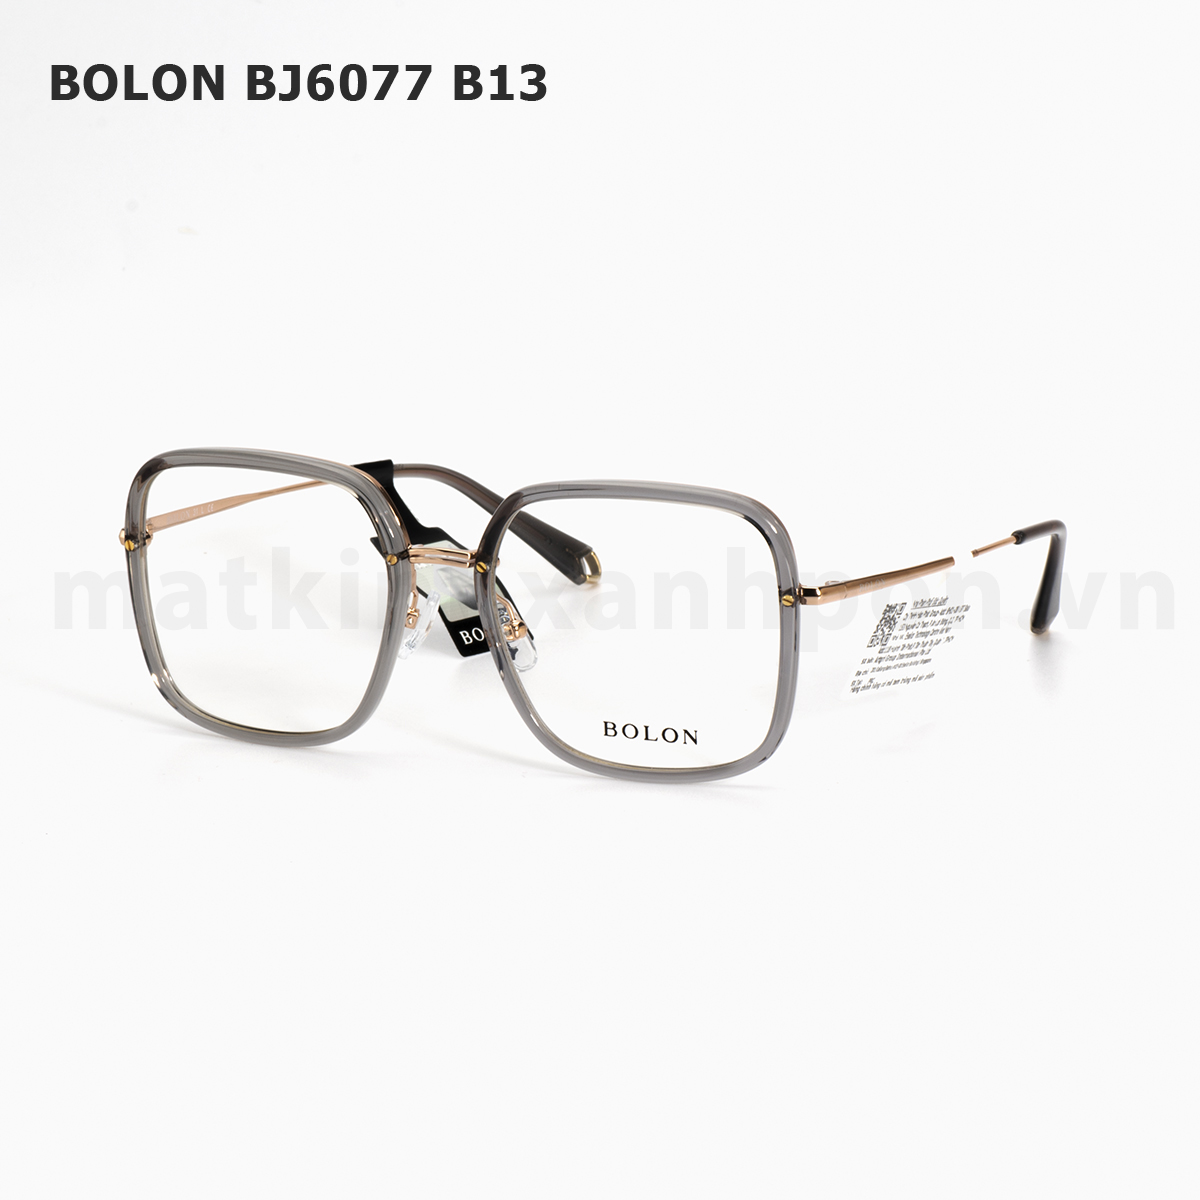 Bolon BJ6077 B13